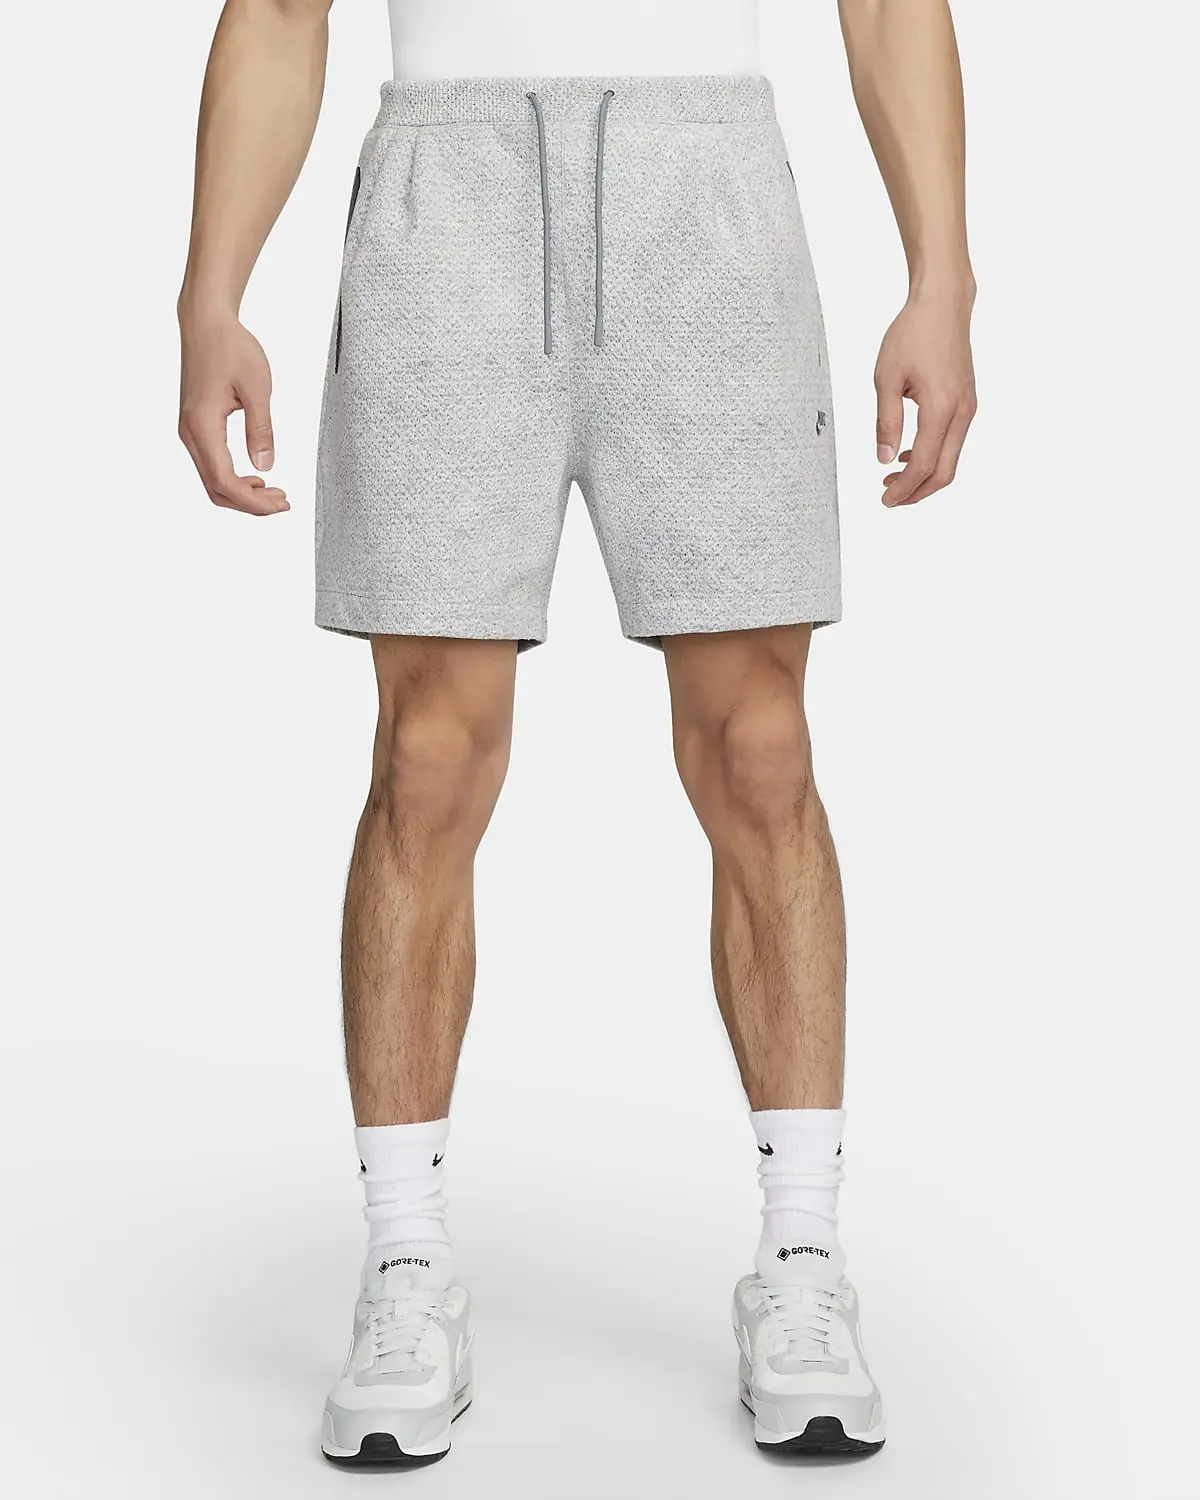 Nike Forward Shorts. 1